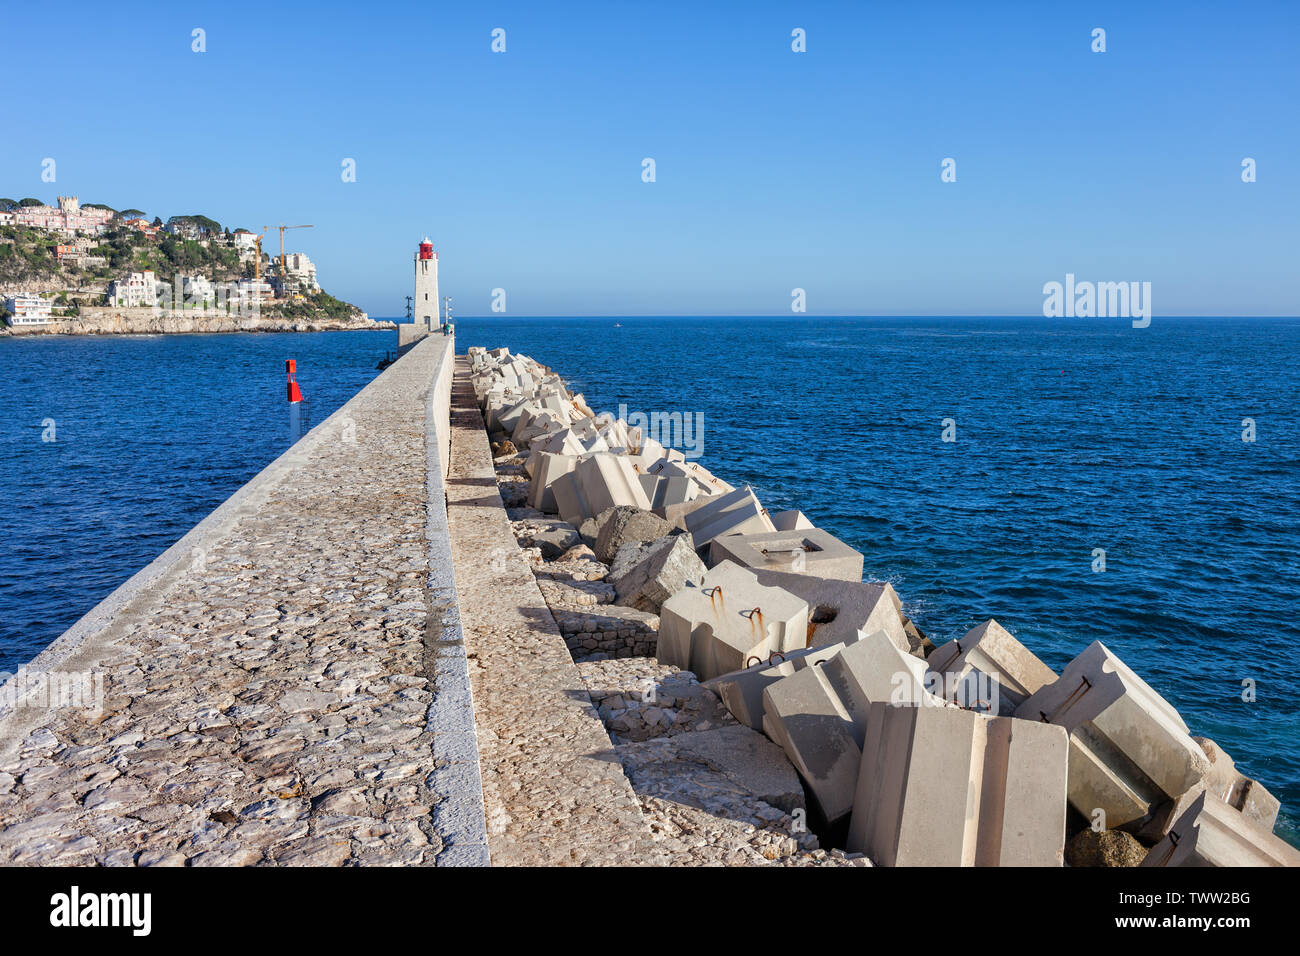 Francia, Nizza Cote d'Azur, molo sul mare con frangiflutti, Phare de Nice faro all'estremità lontana. Foto Stock